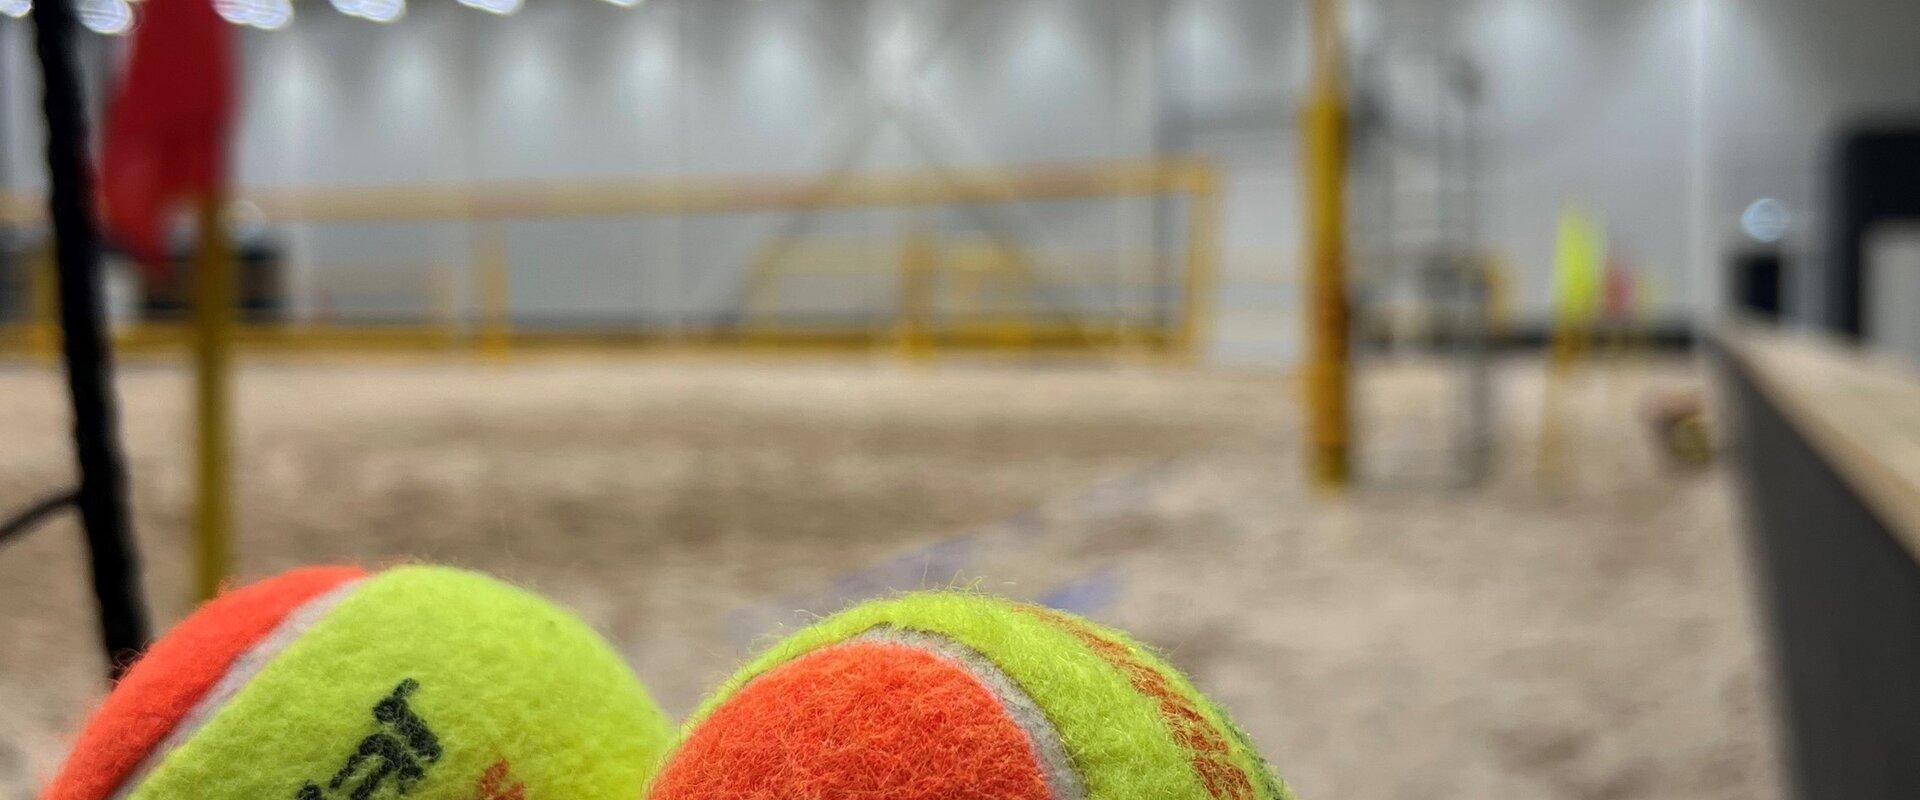 Jõulumäe indoor beach arena and sand courts, beach tennis